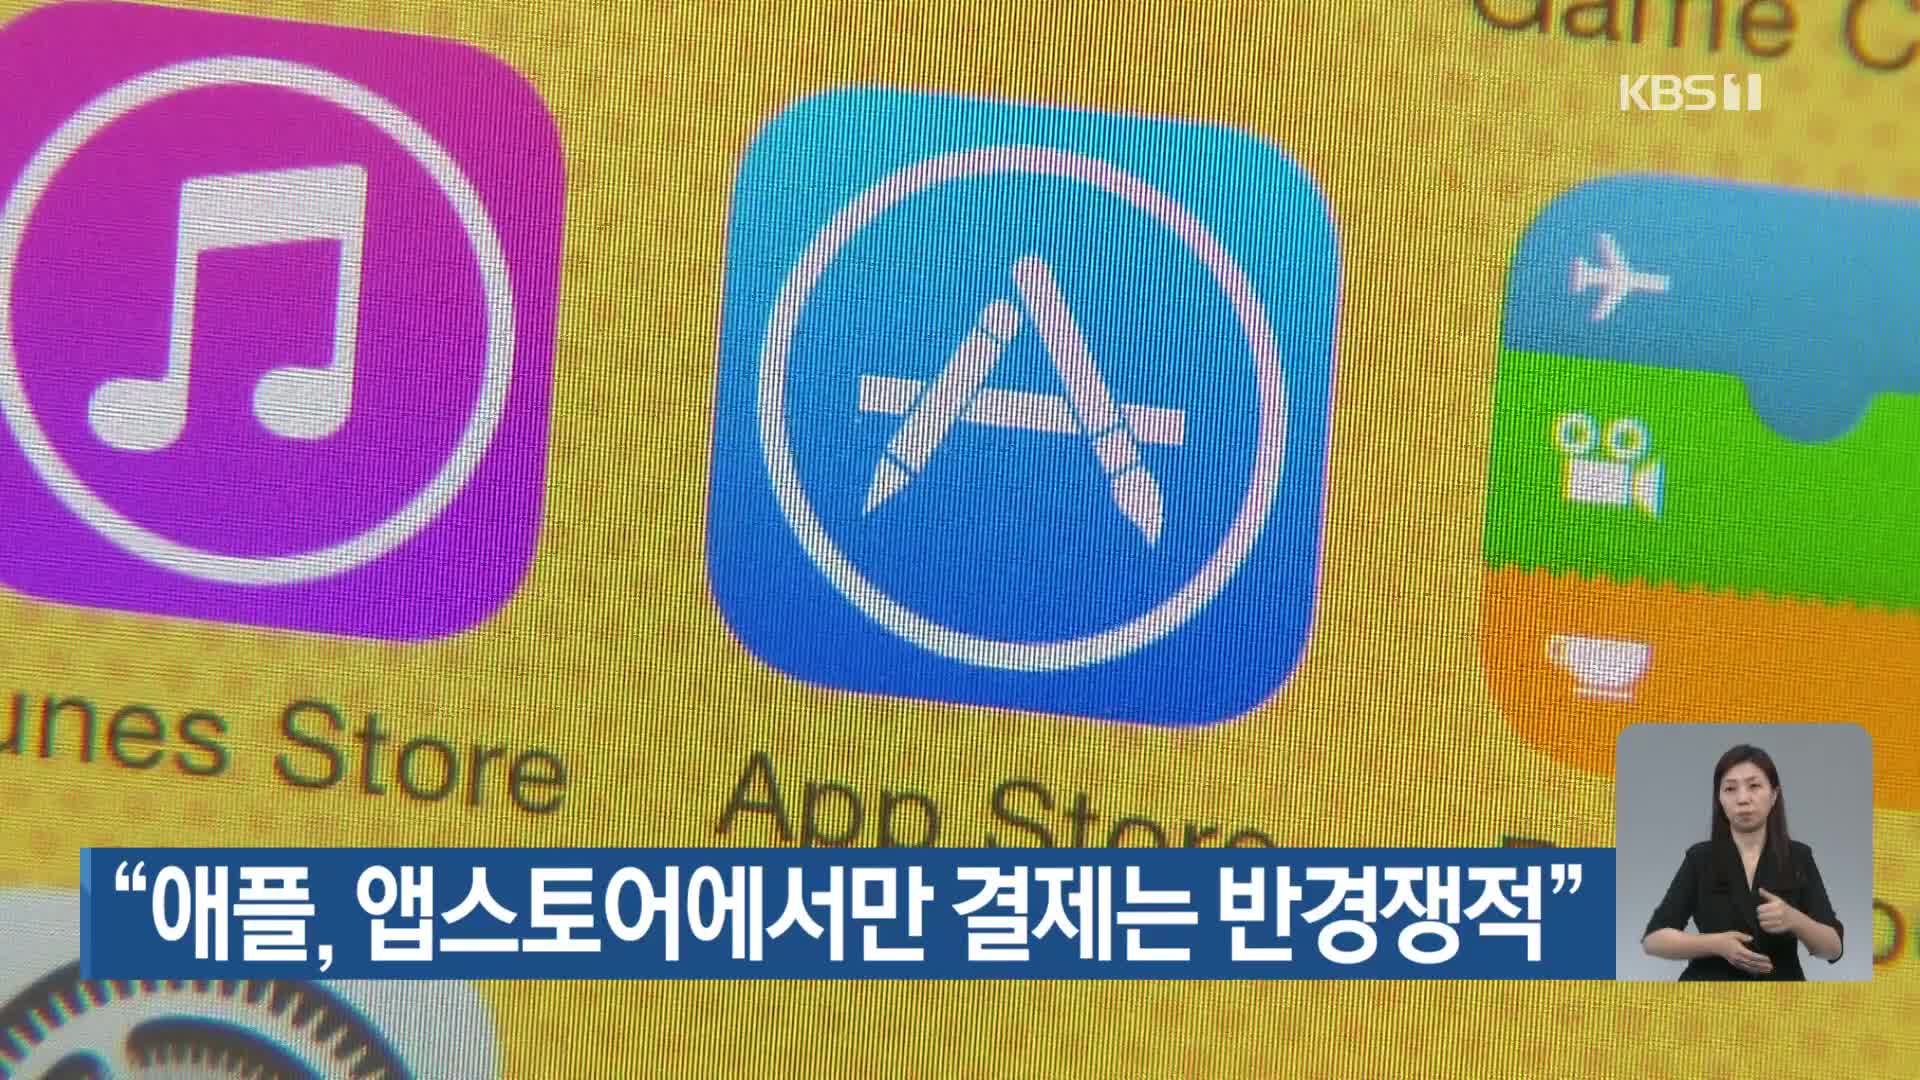 “애플, 앱스토어에서만 결제는 반경쟁적”